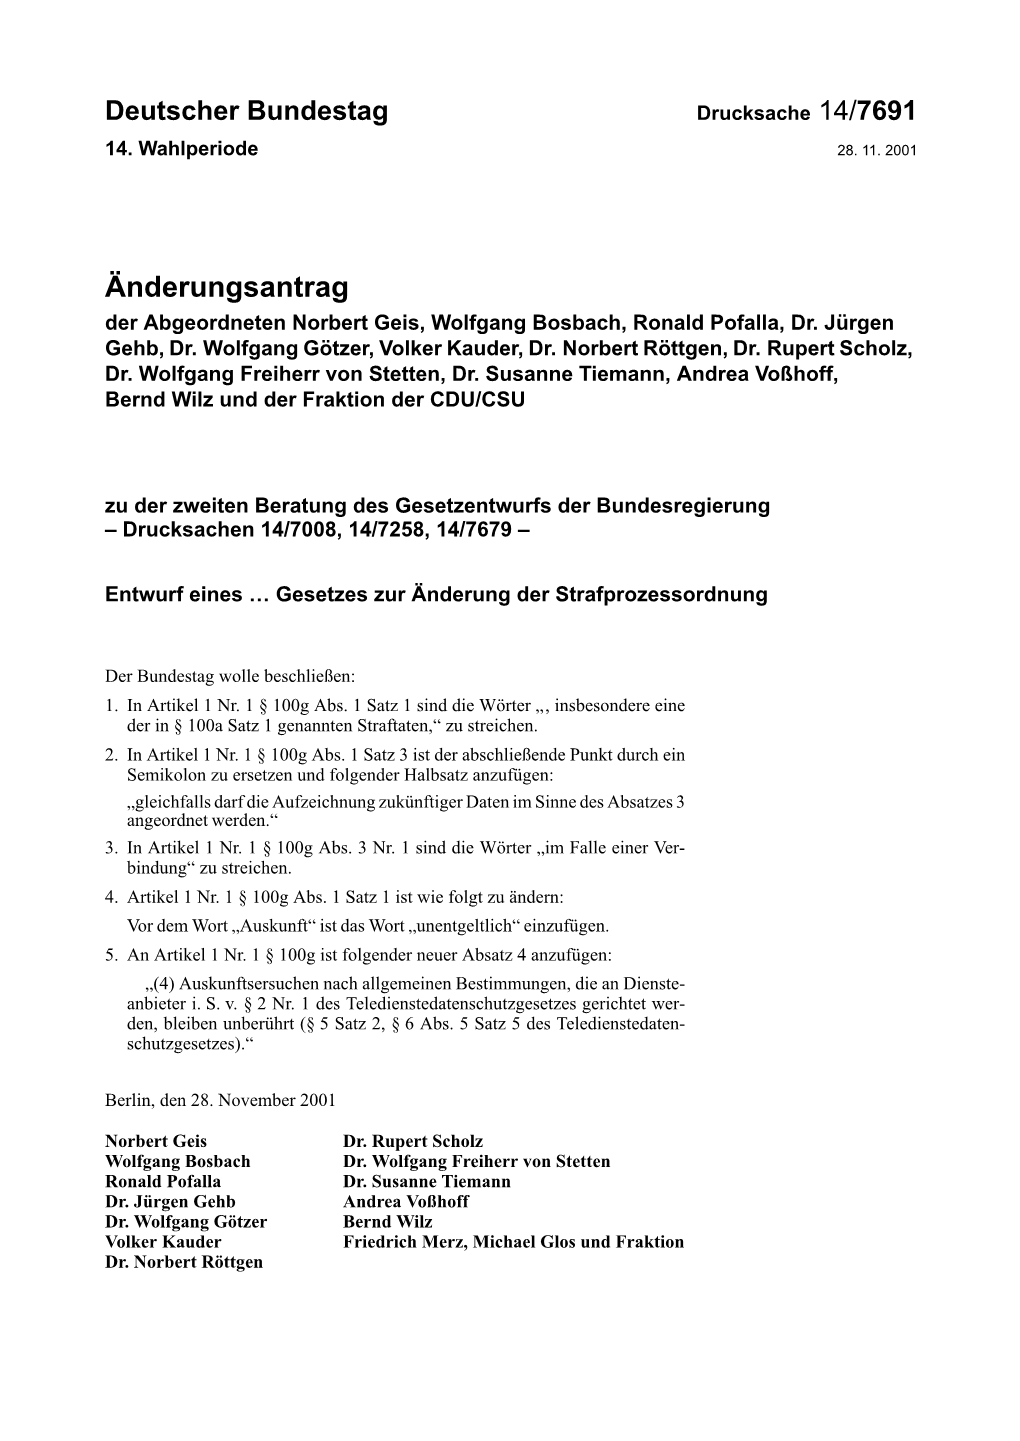 Änderungsantrag Der Abgeordneten Norbert Geis, Wolfgang Bosbach, Ronald Pofalla, Dr